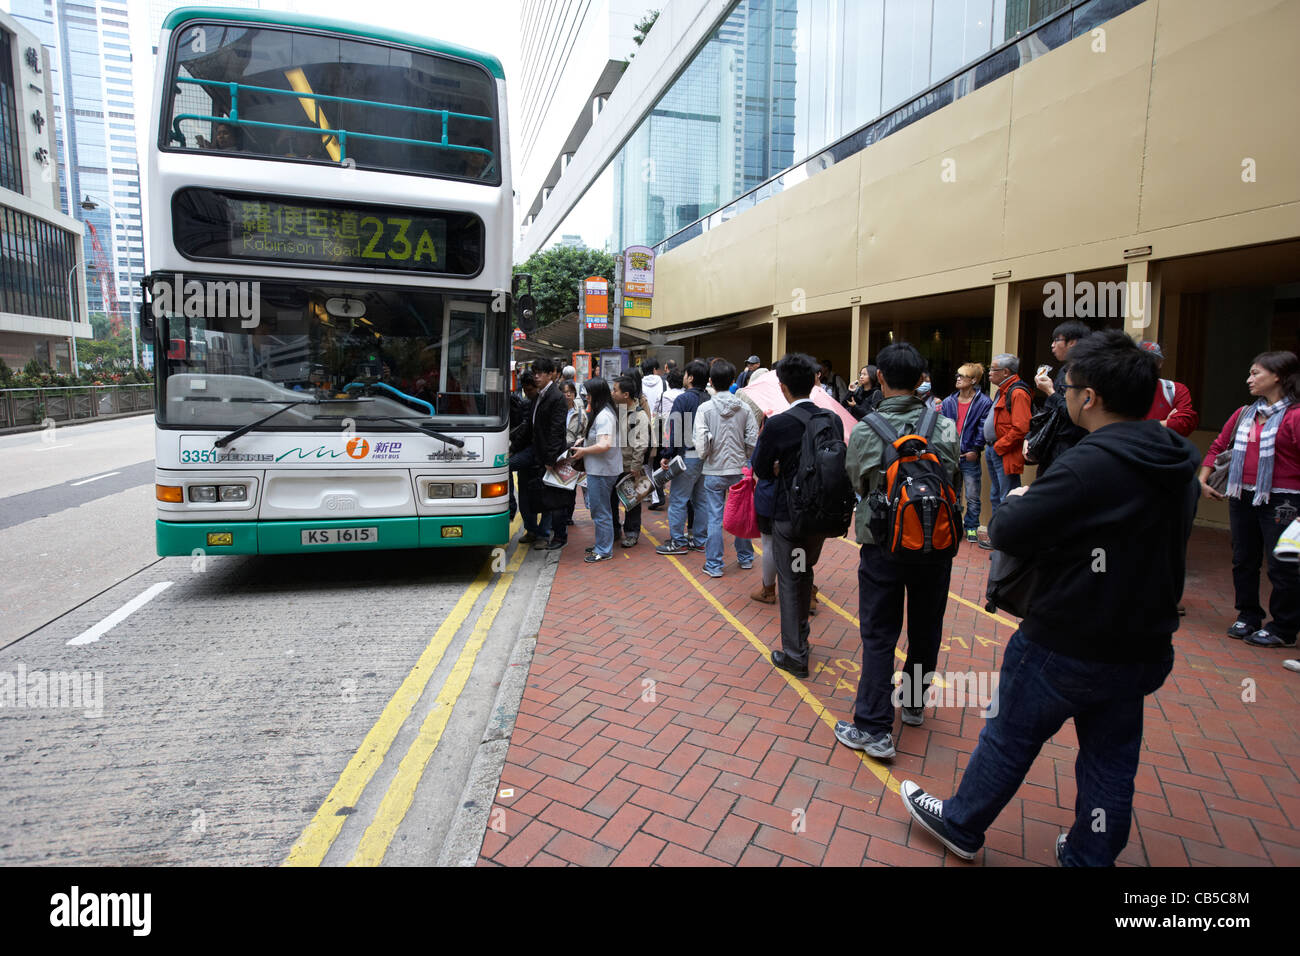 Les chinois en attente pour un bus dans le centre-ville de quartier de l'Amirauté l'île de Hong Kong région administrative spéciale de Chine Banque D'Images